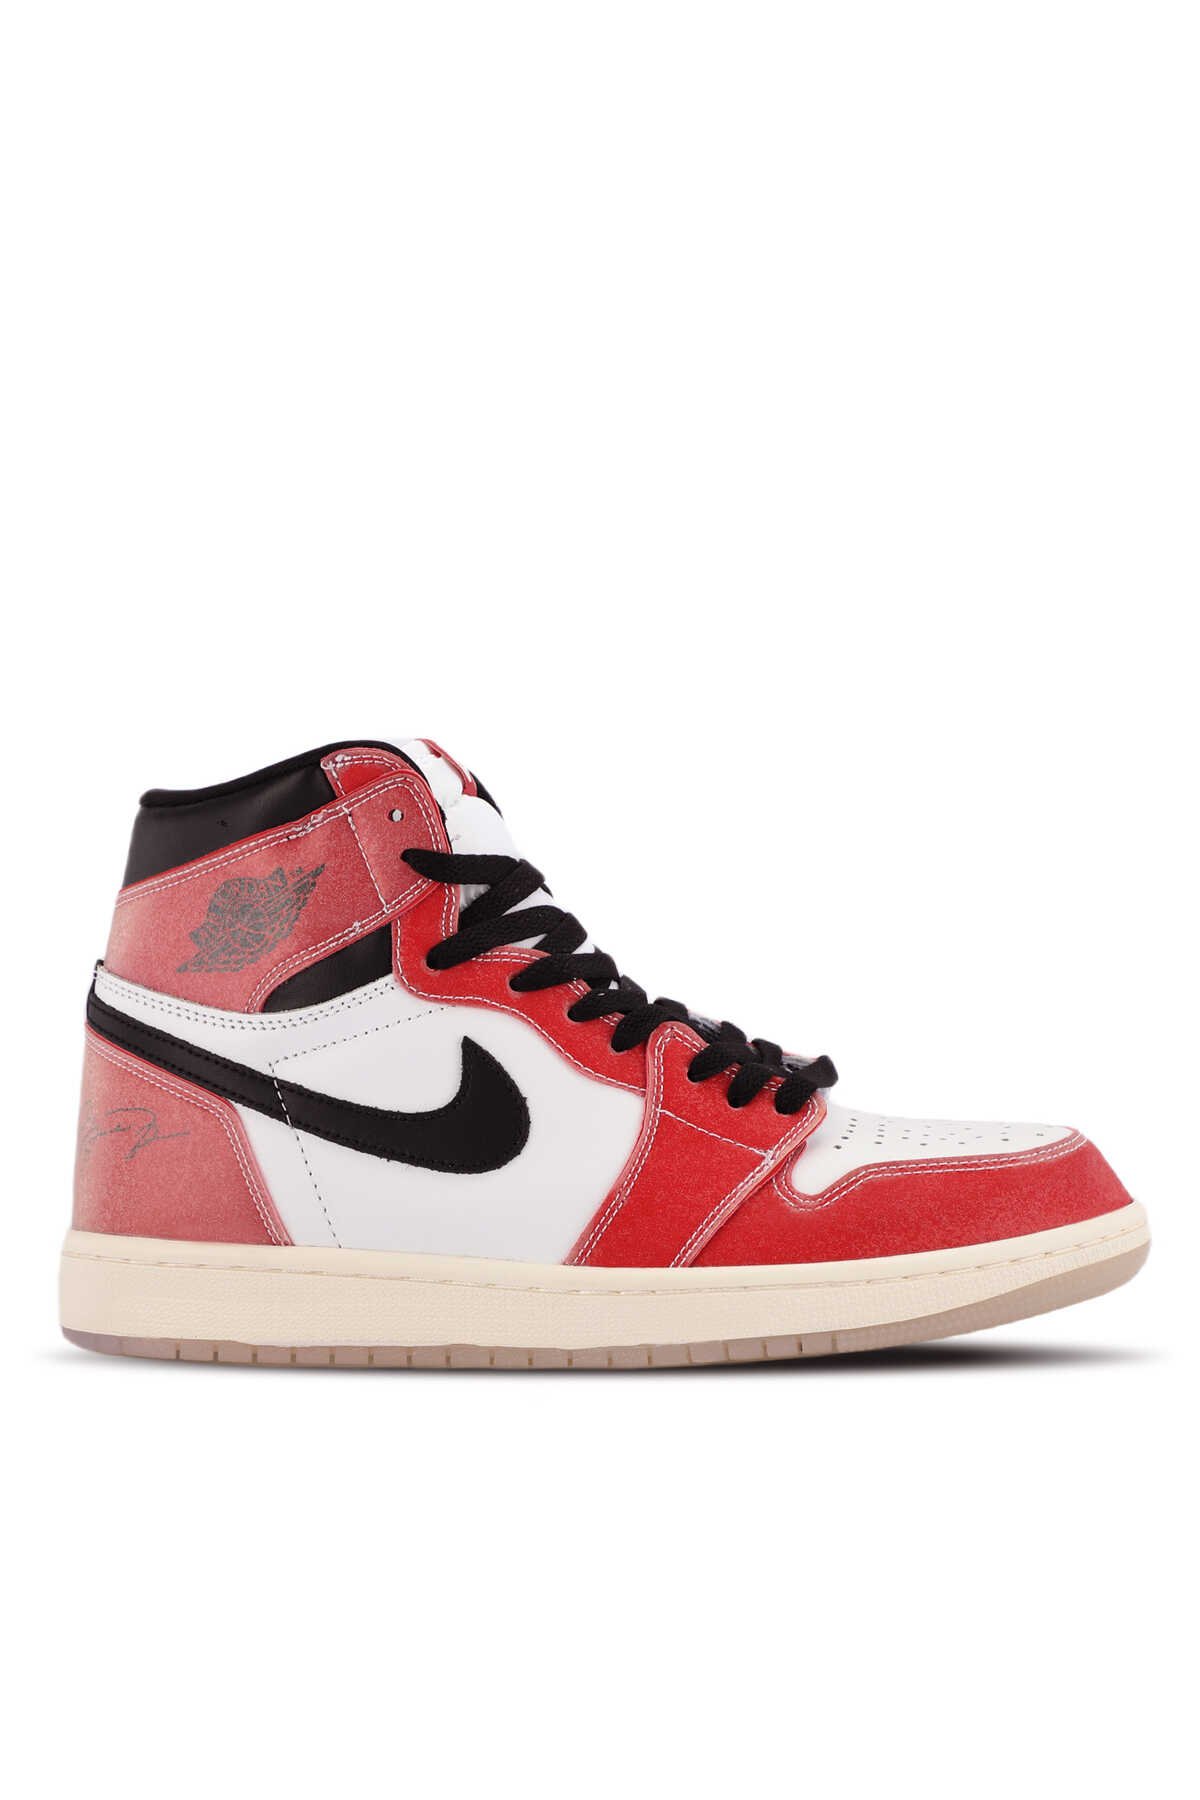 Nike - Nike AIR JORDON 1 RETRO HIGH OG SP Sneaker Erkek Ayakkabı Kırmızı / Beyaz